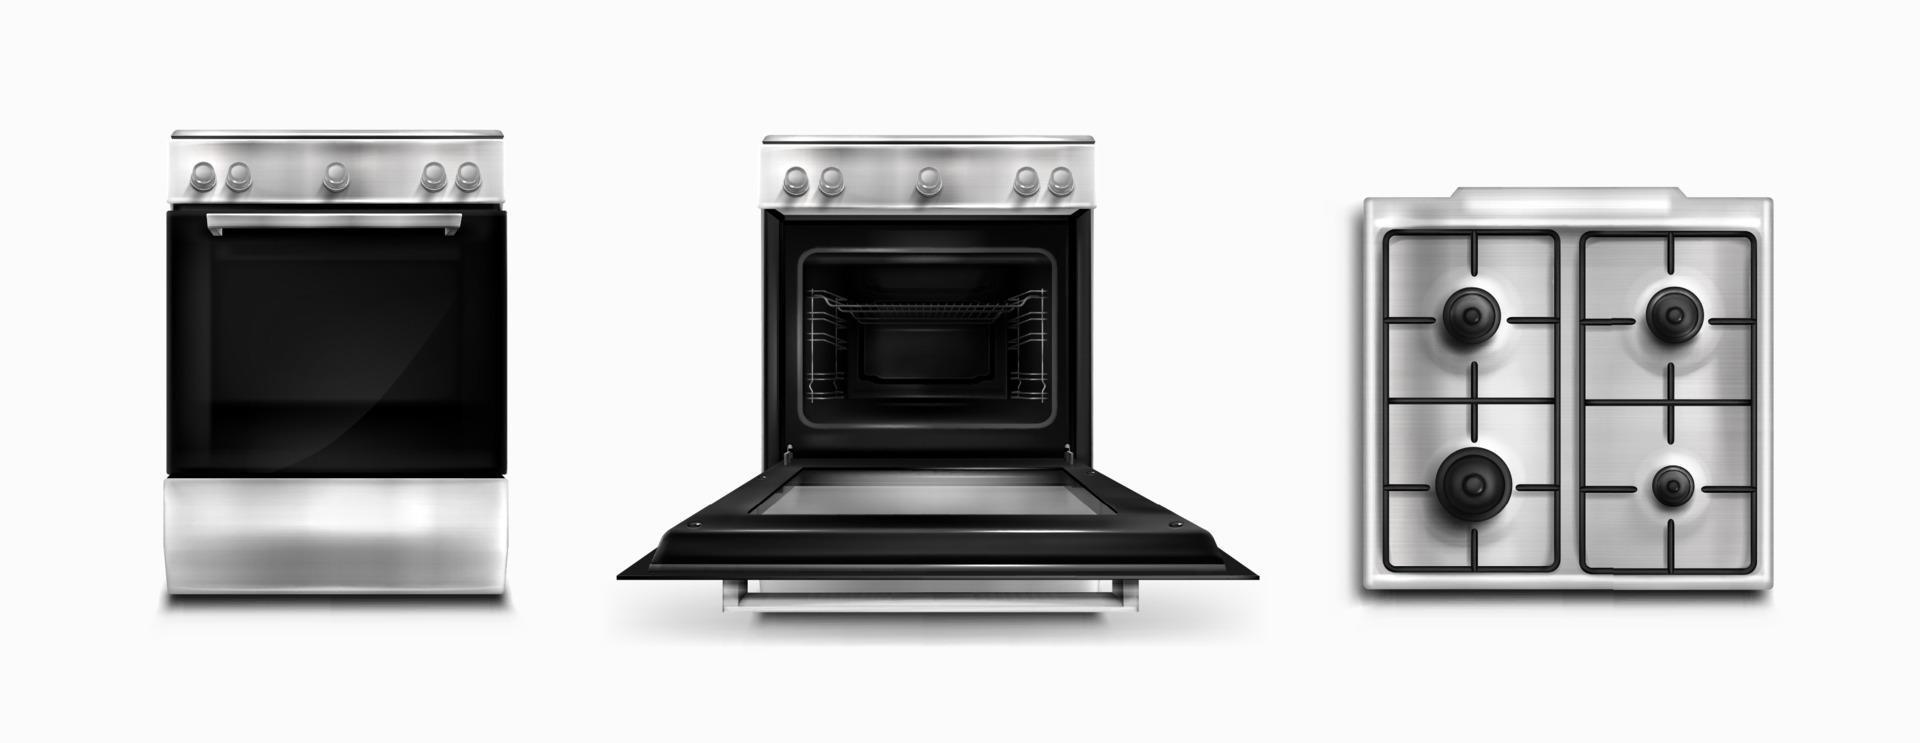 horno, electrodomésticos de cocina eléctricos y de gas vista superior vector